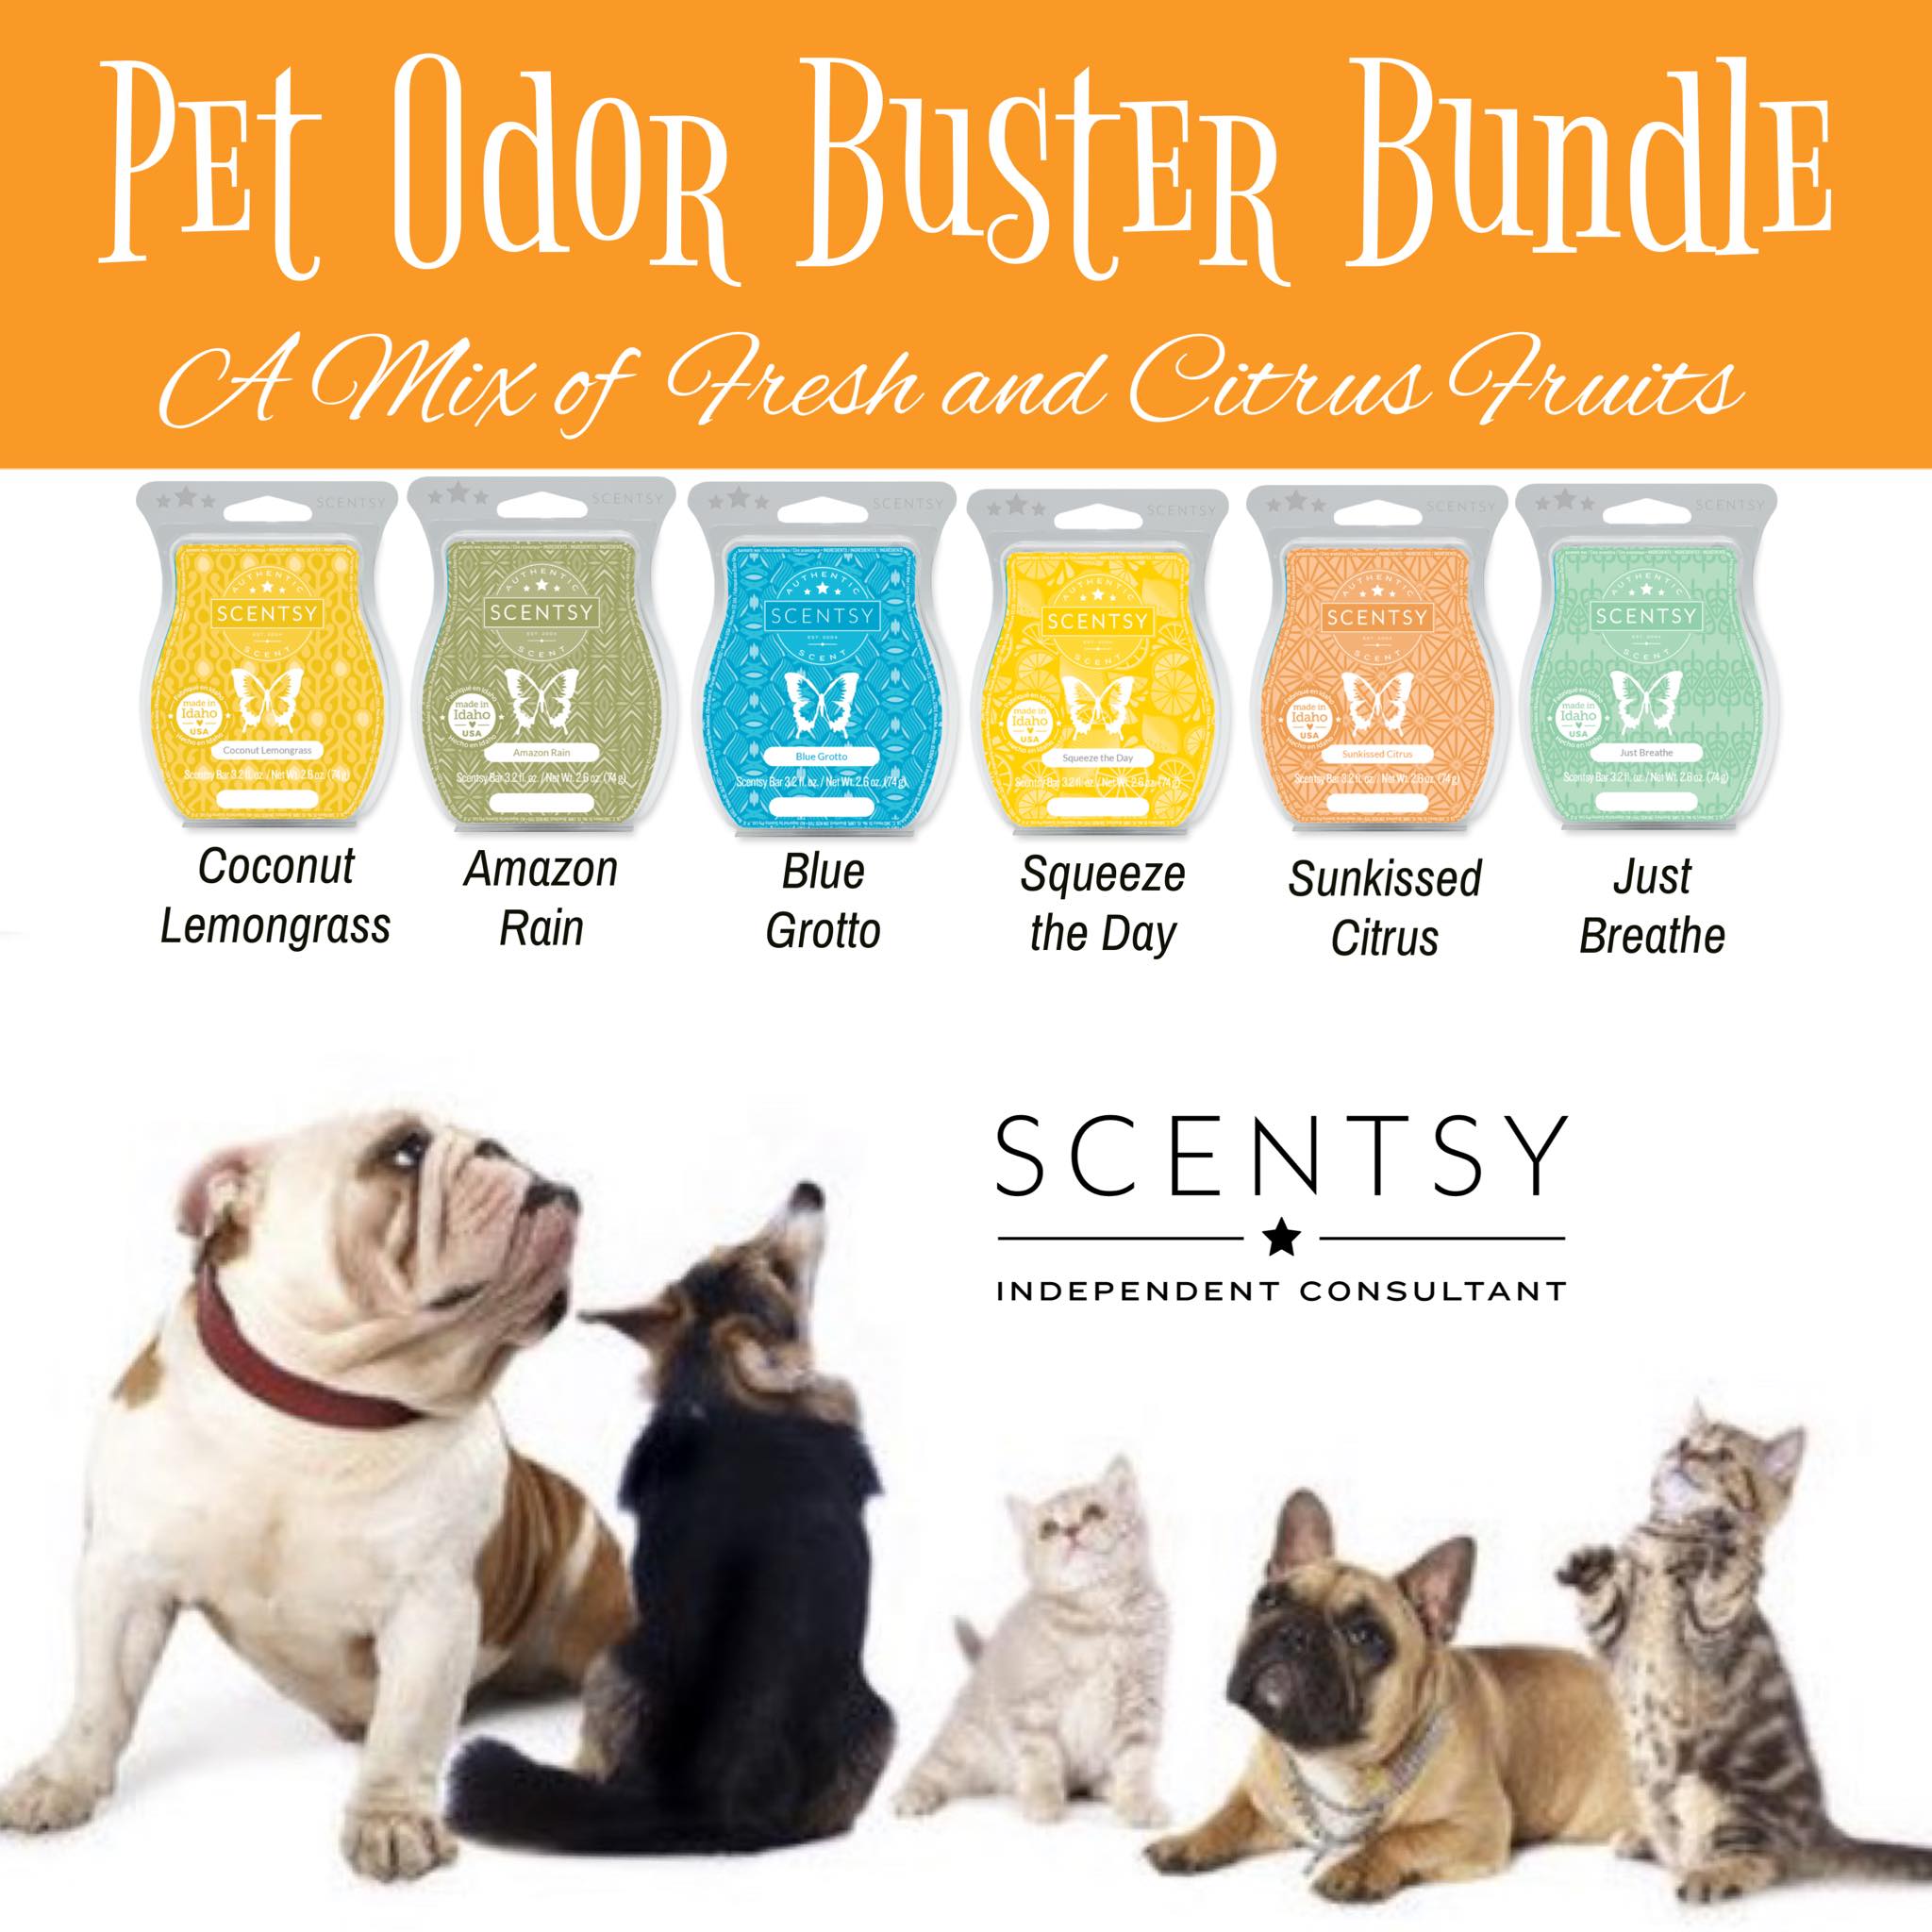 Pet Odor Bundle and Pet Supplies